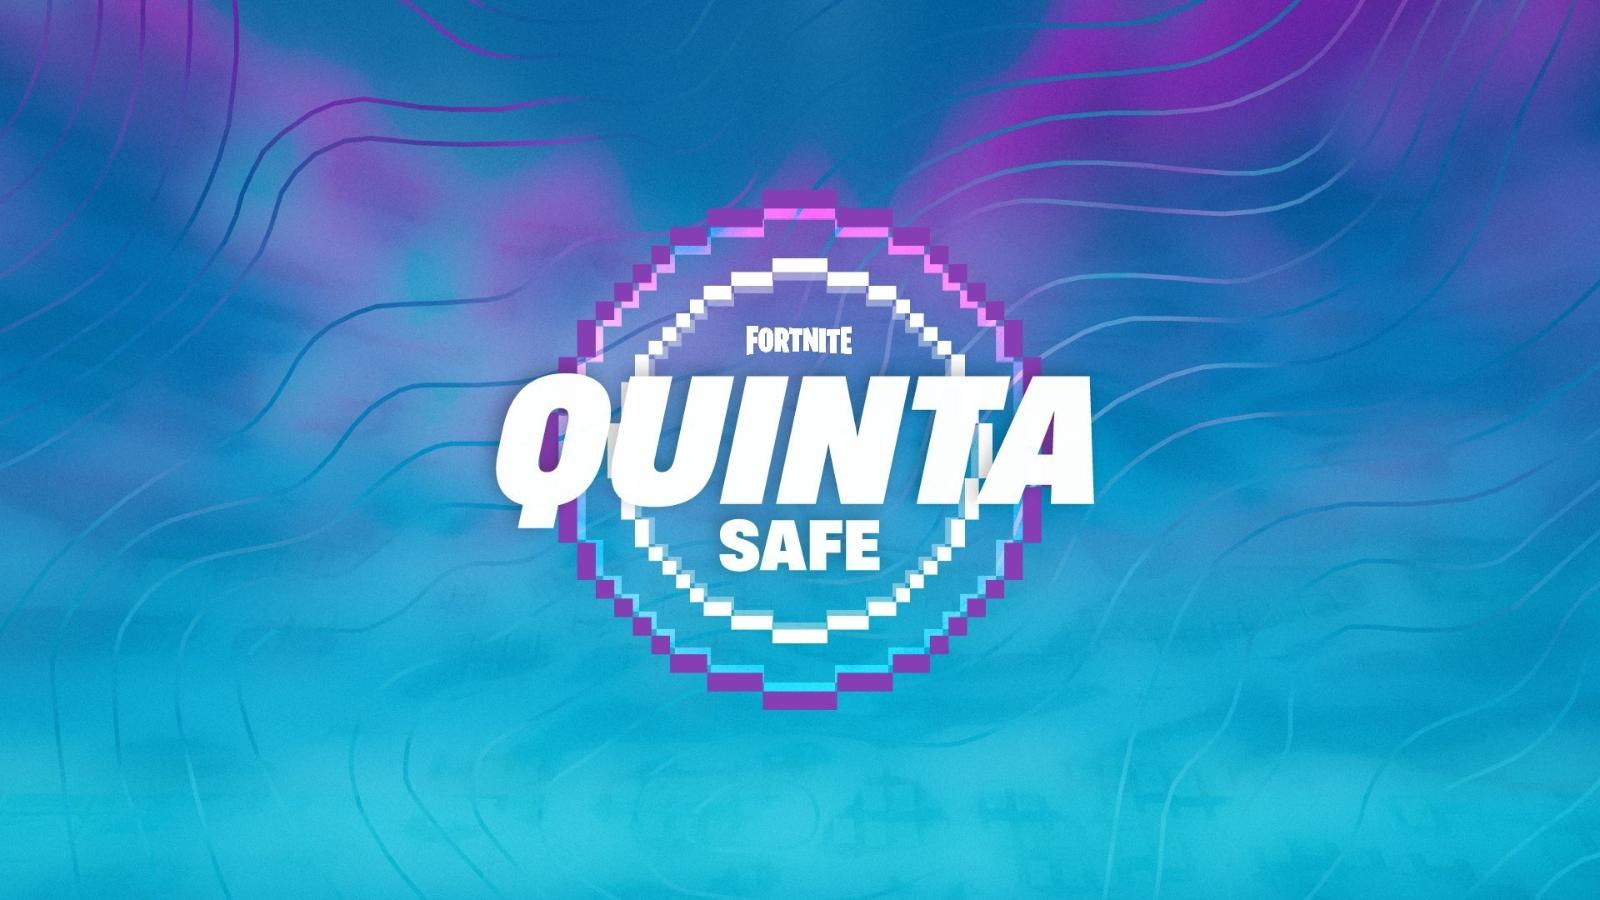 Fortnite Quinta Safe event